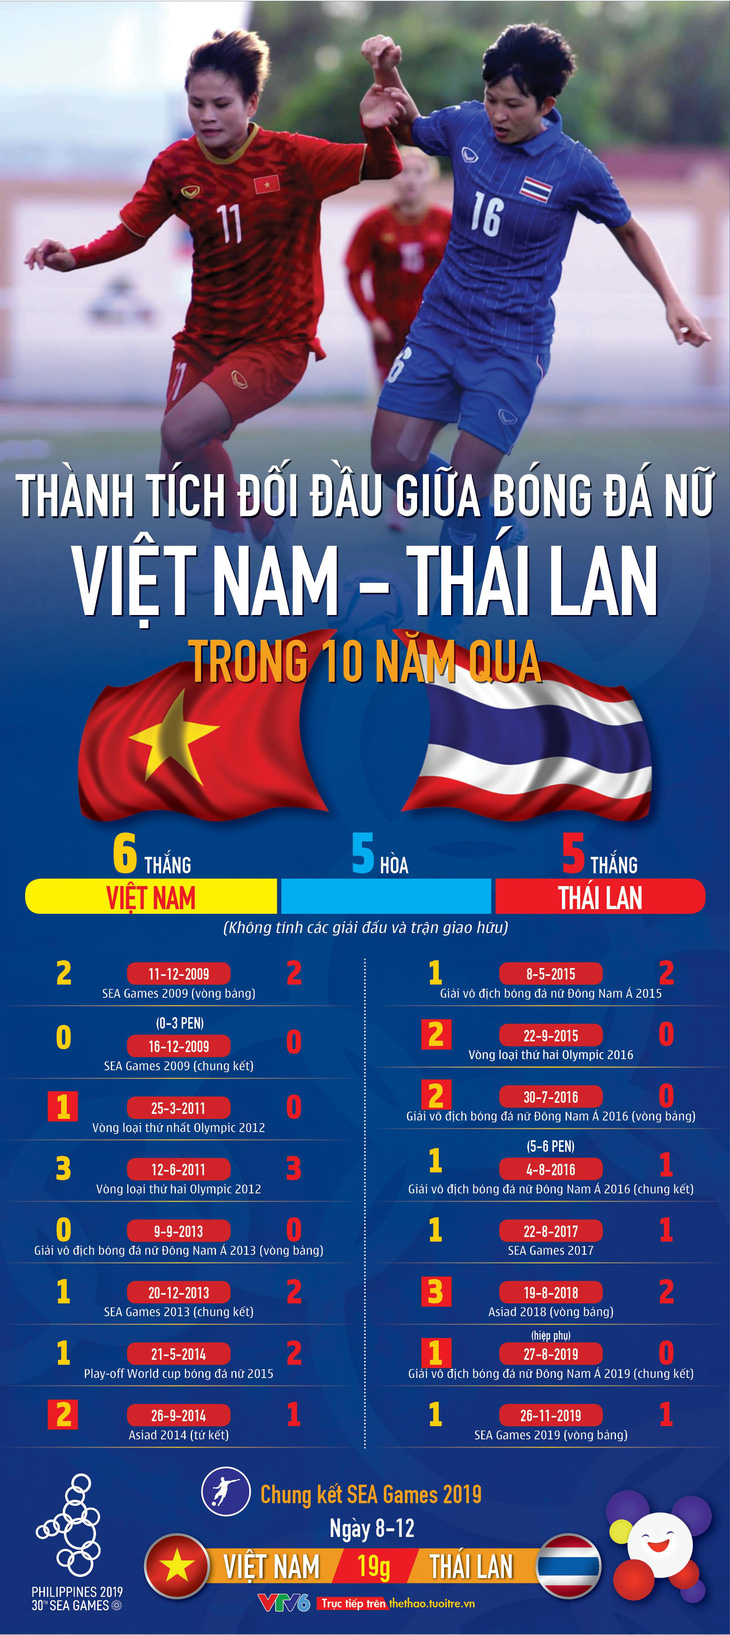 Bóng đá nữ Việt Nam - Thái Lan: Bên tám lạng, người nửa cân suốt 10 năm qua - Ảnh 1.